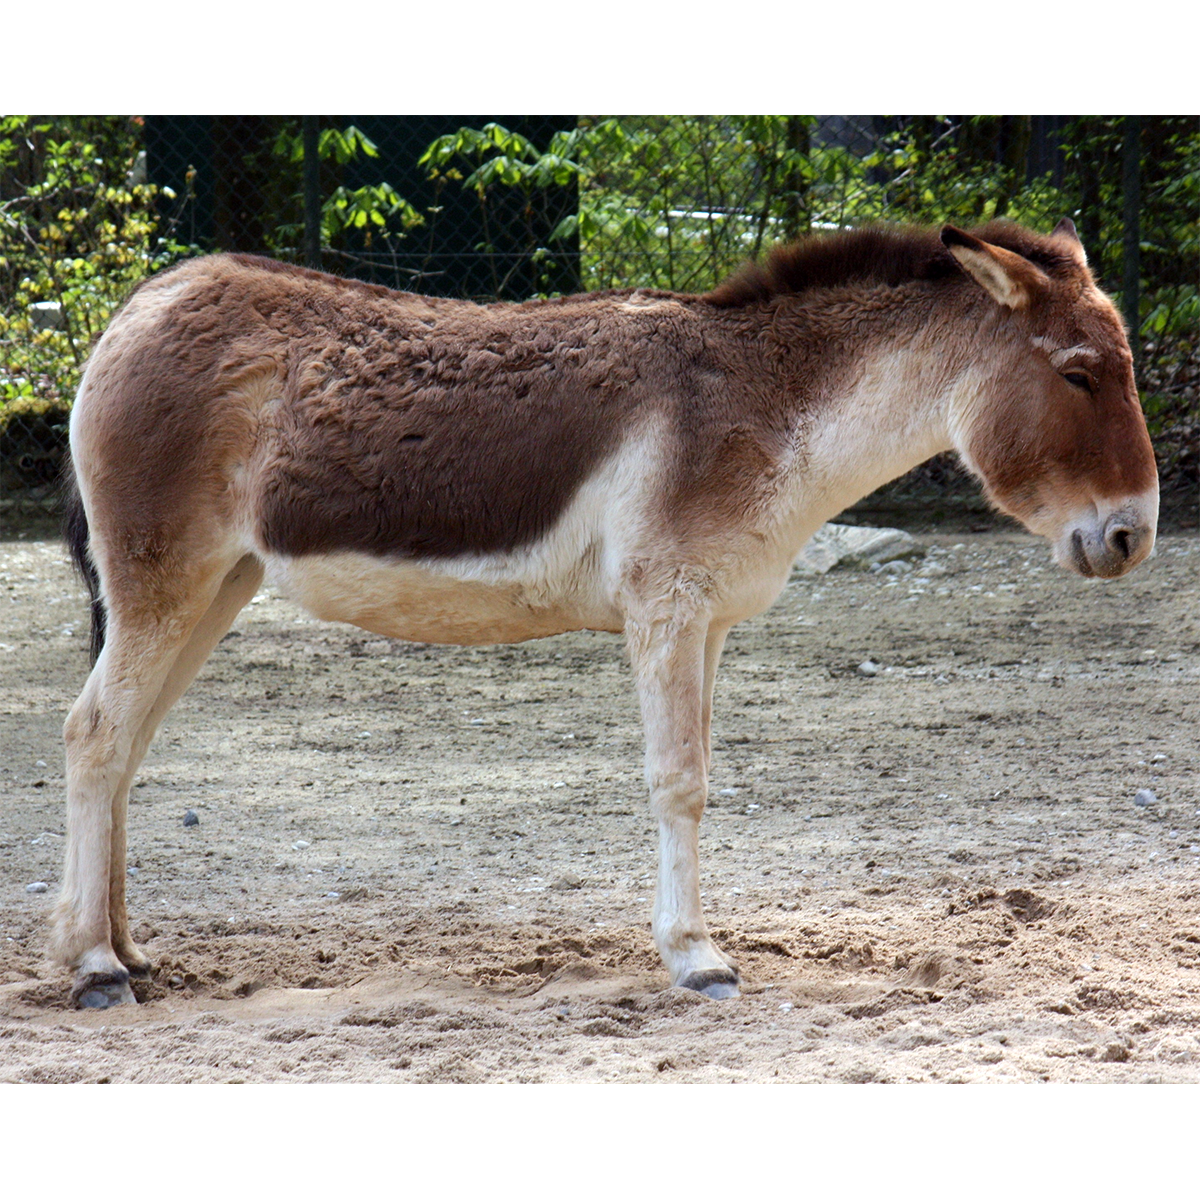 Кианг (Equus kiang) Фото №1